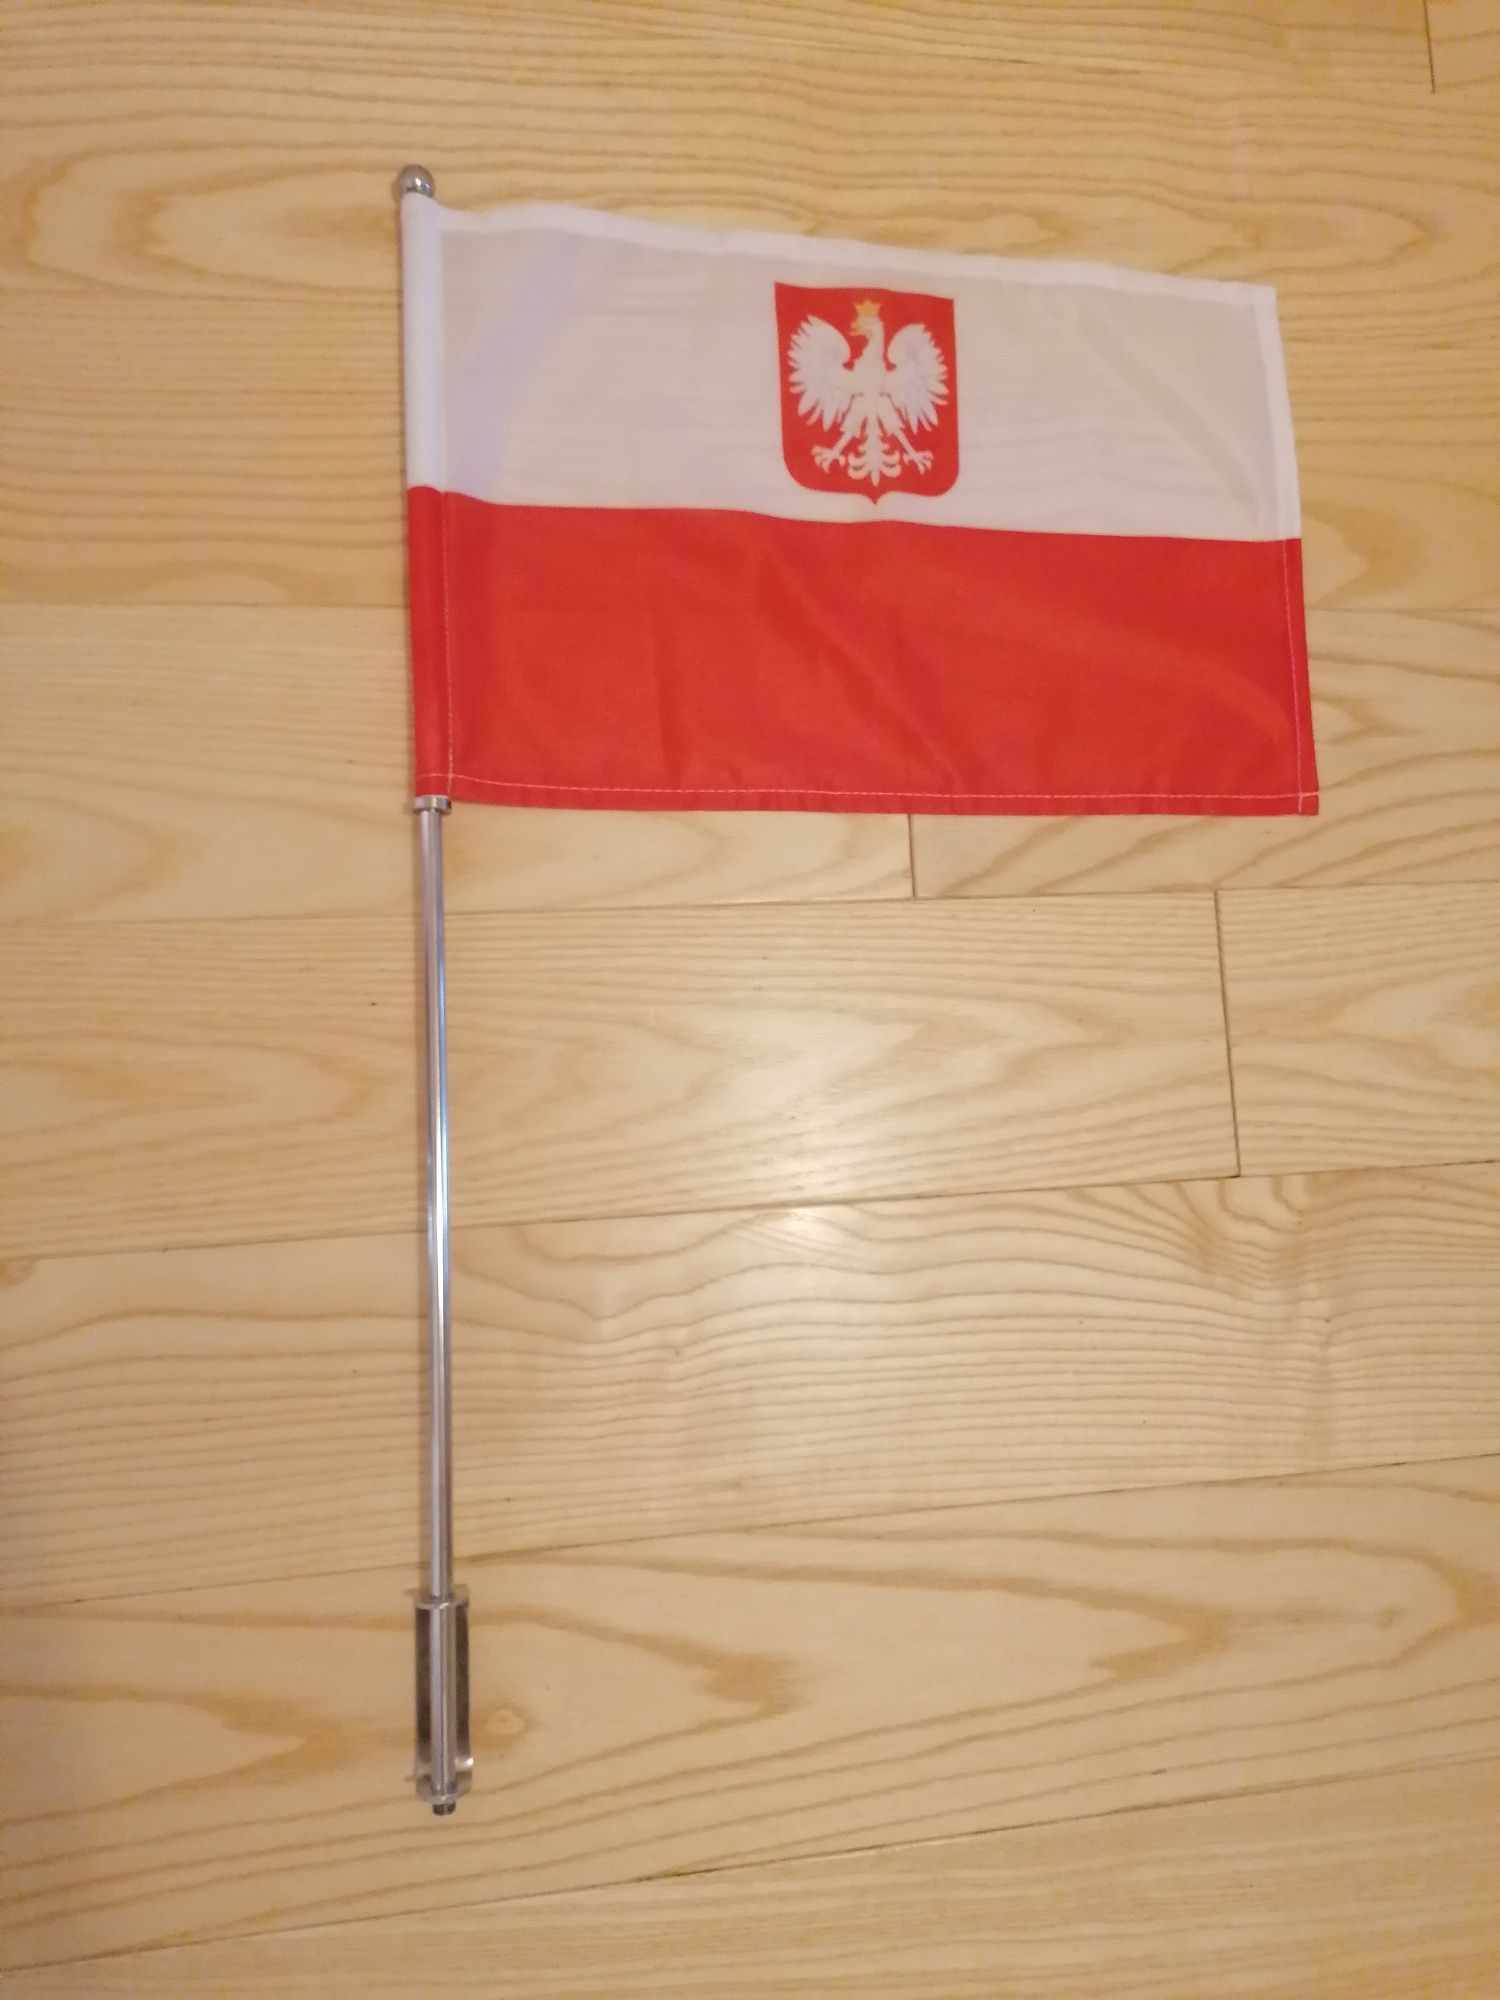 Maszt z flaga Polski Chopper Cruiser Trike Metal Jakość